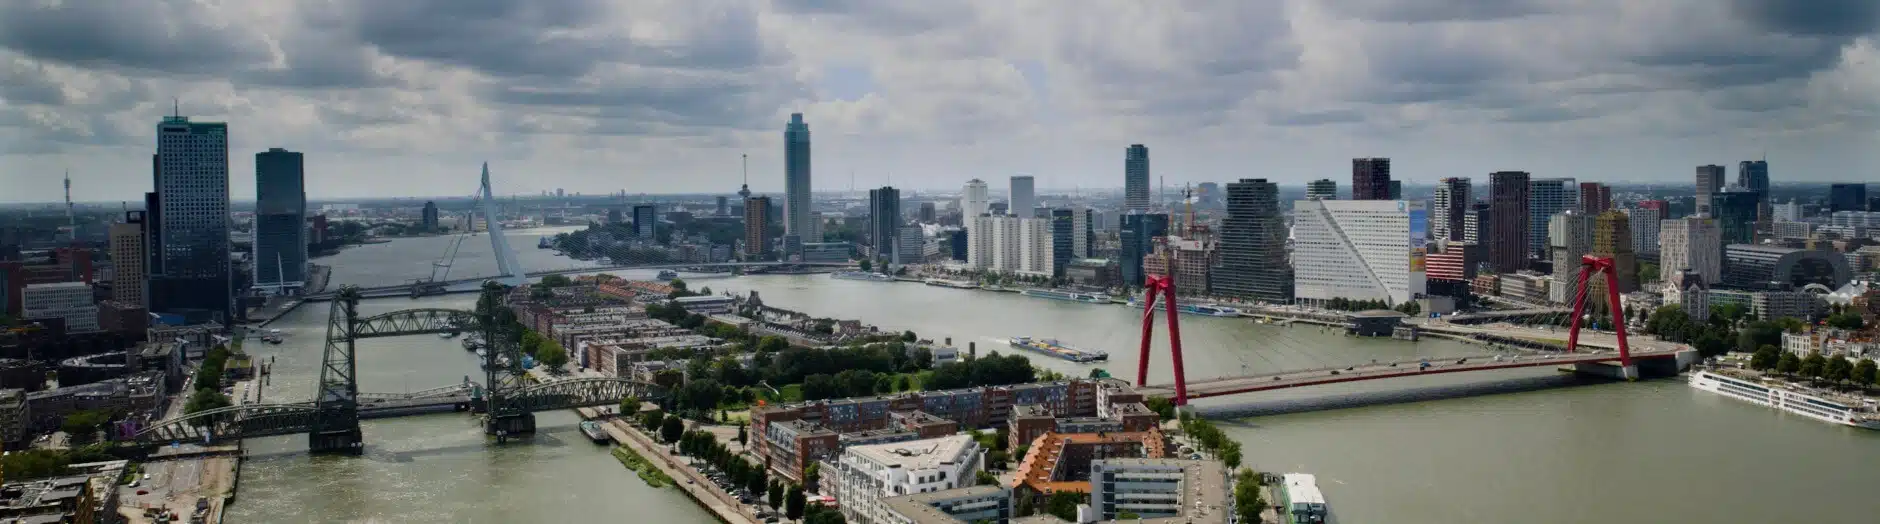 Bedrijfsfilm met drone opnames Rotterdam